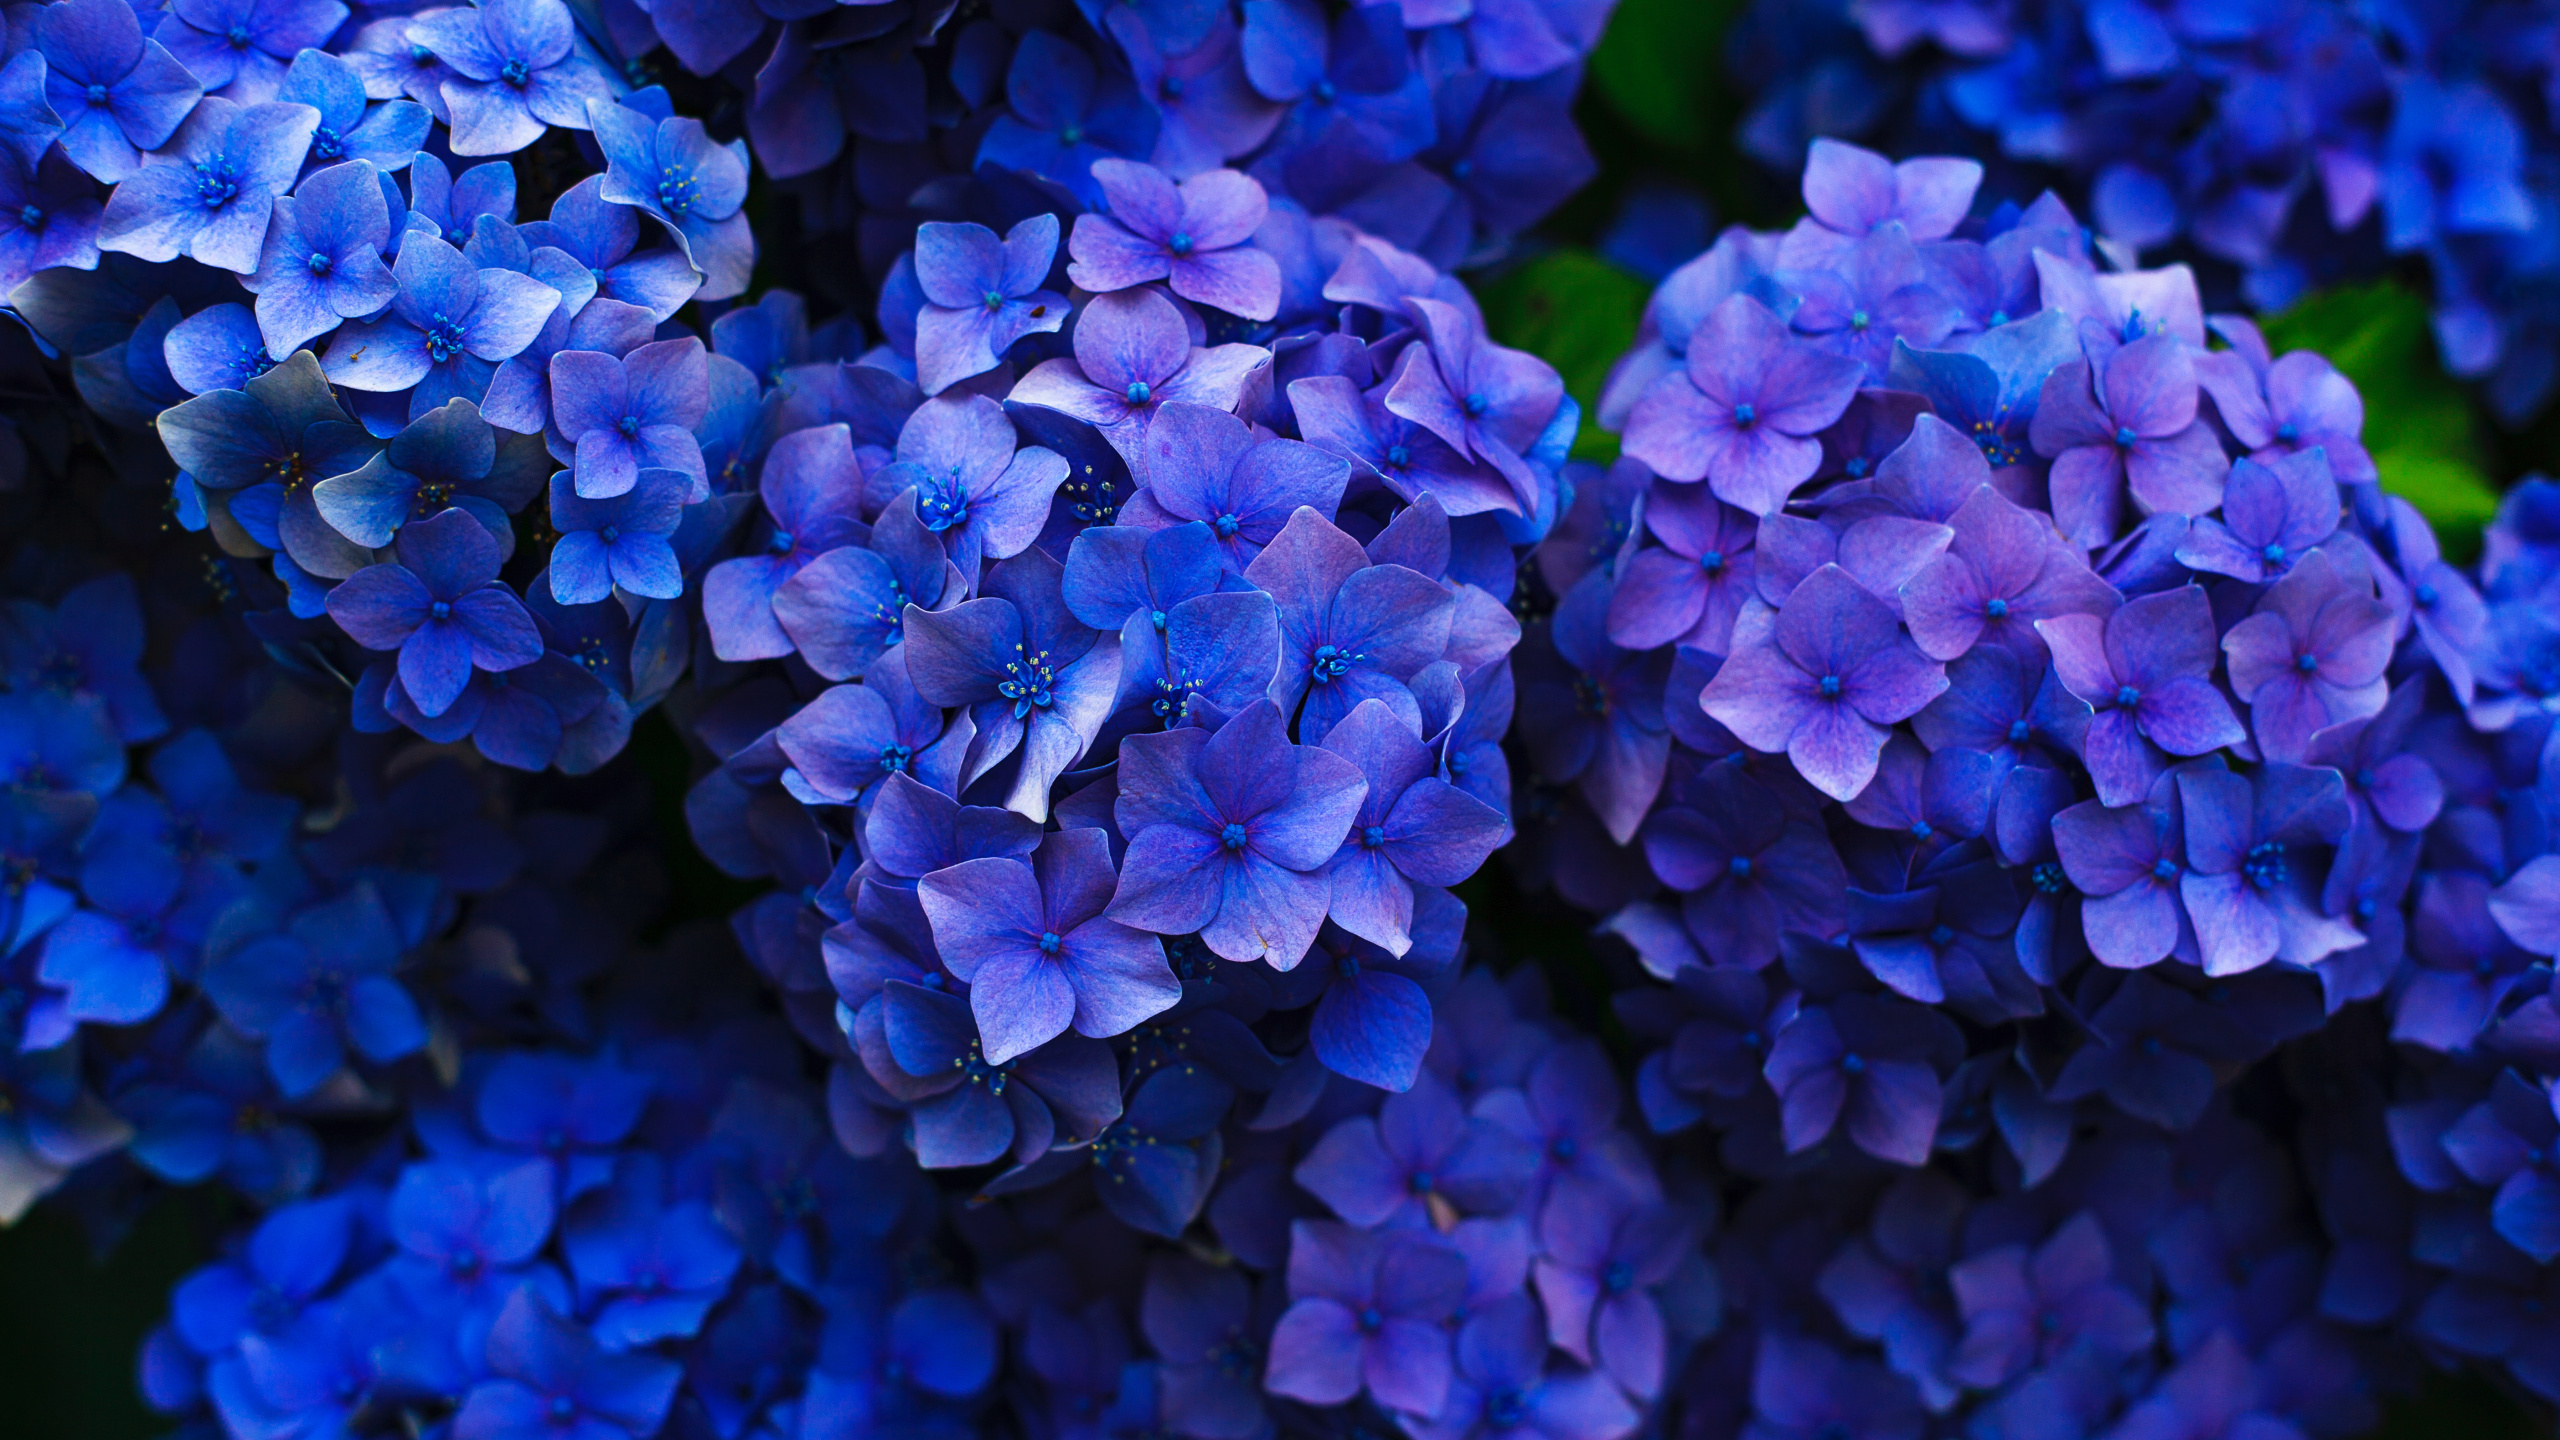 Fleurs Violettes Dans L'objectif à Basculement. Wallpaper in 2560x1440 Resolution